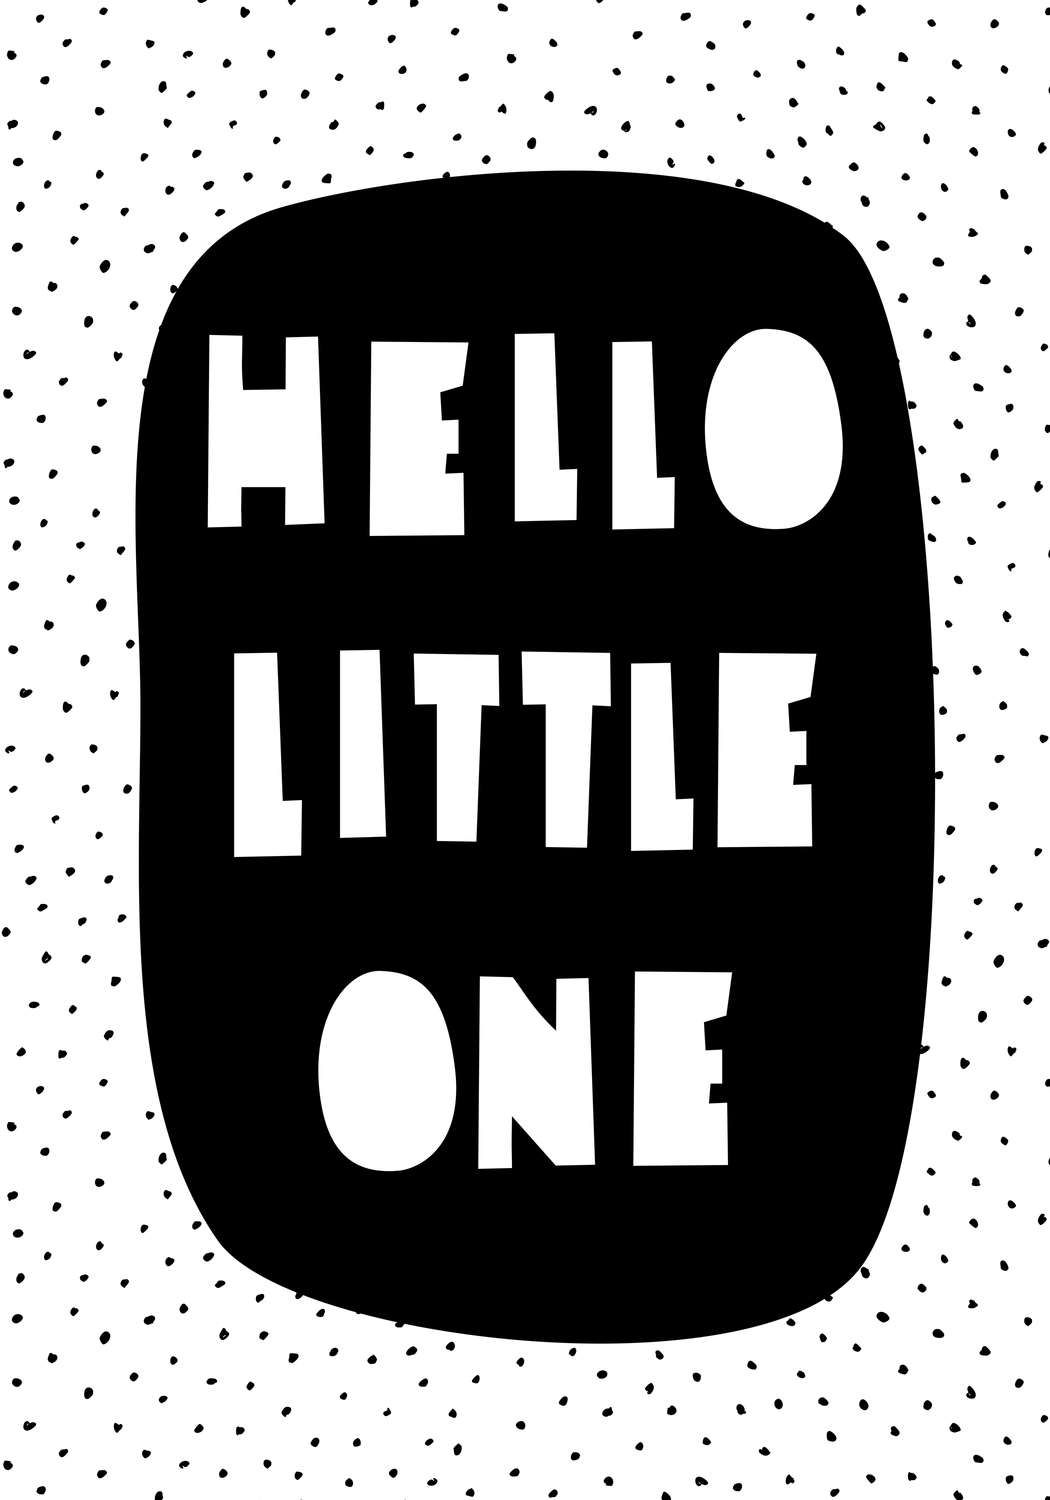             Digital behang voor kinderkamer met opschrift "Hello Little One" - Glad & licht glanzend vlies
        